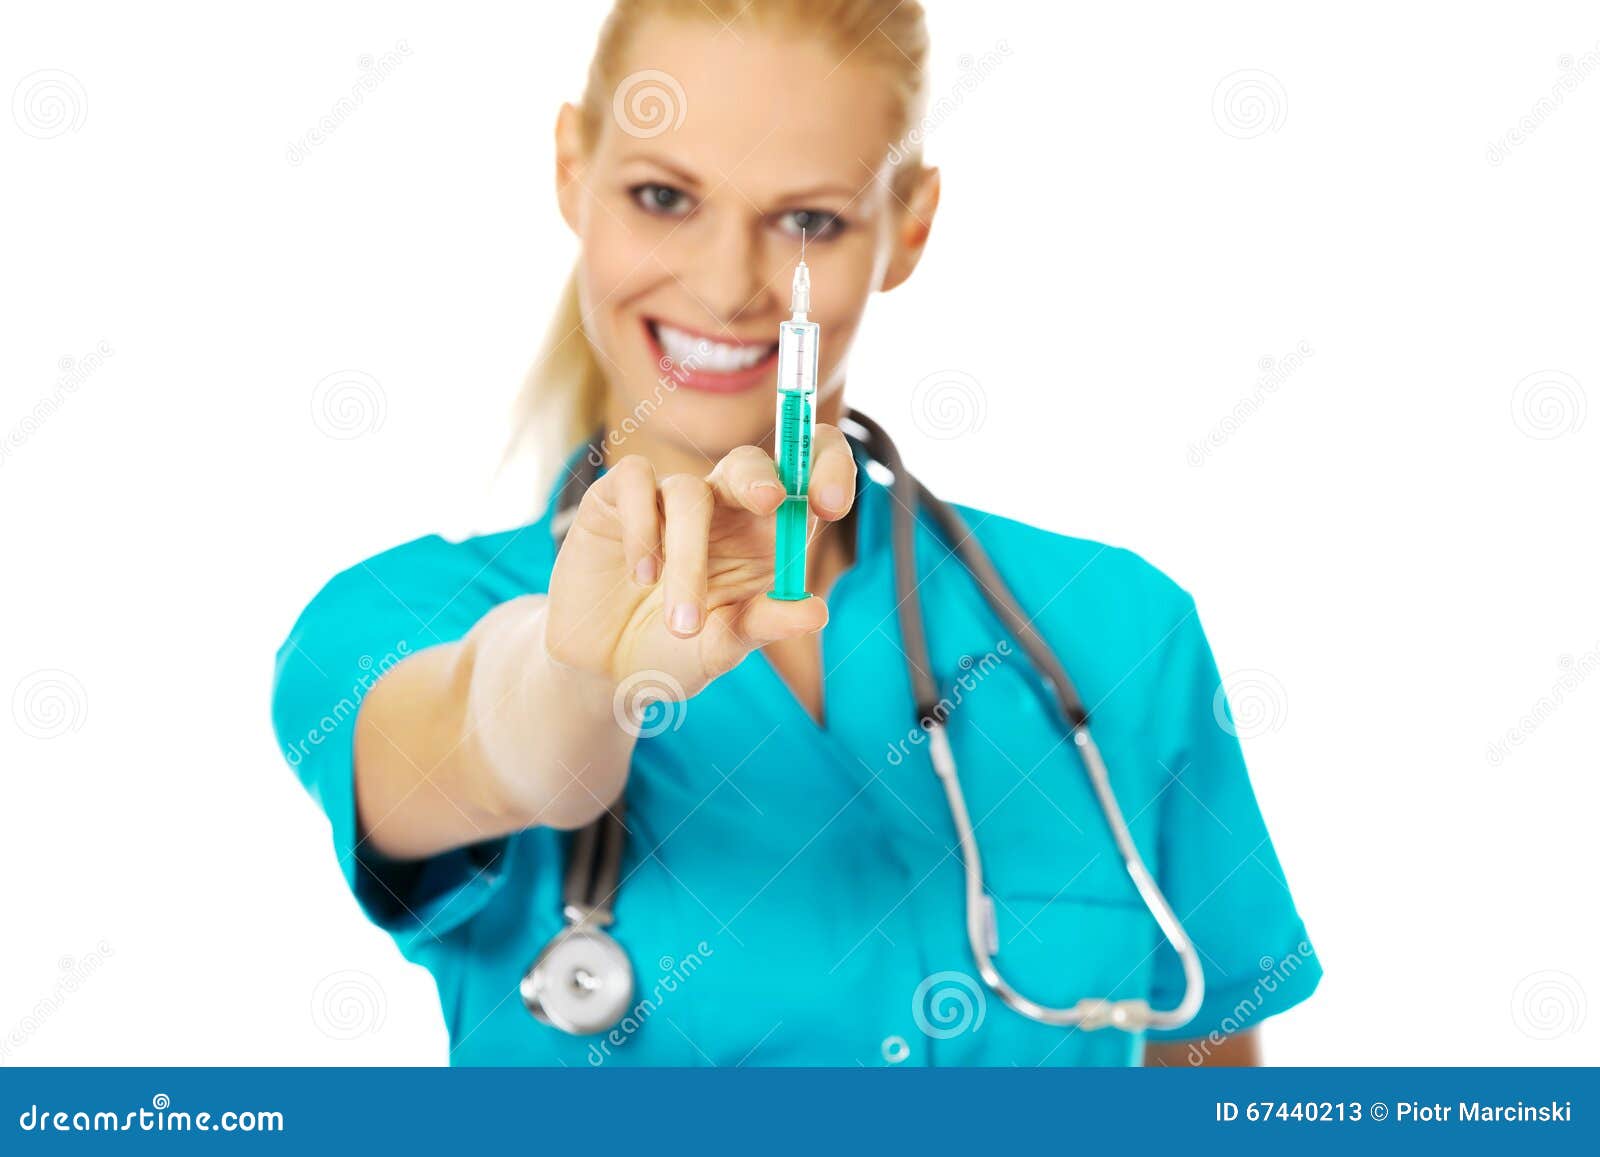 Новая медсестра пришла. Медсестра держит шприц. Медсестра улыбается и держит шприц. Медсестра малыша стетоскопом. Пухленькая медсестра со стетоскопом.